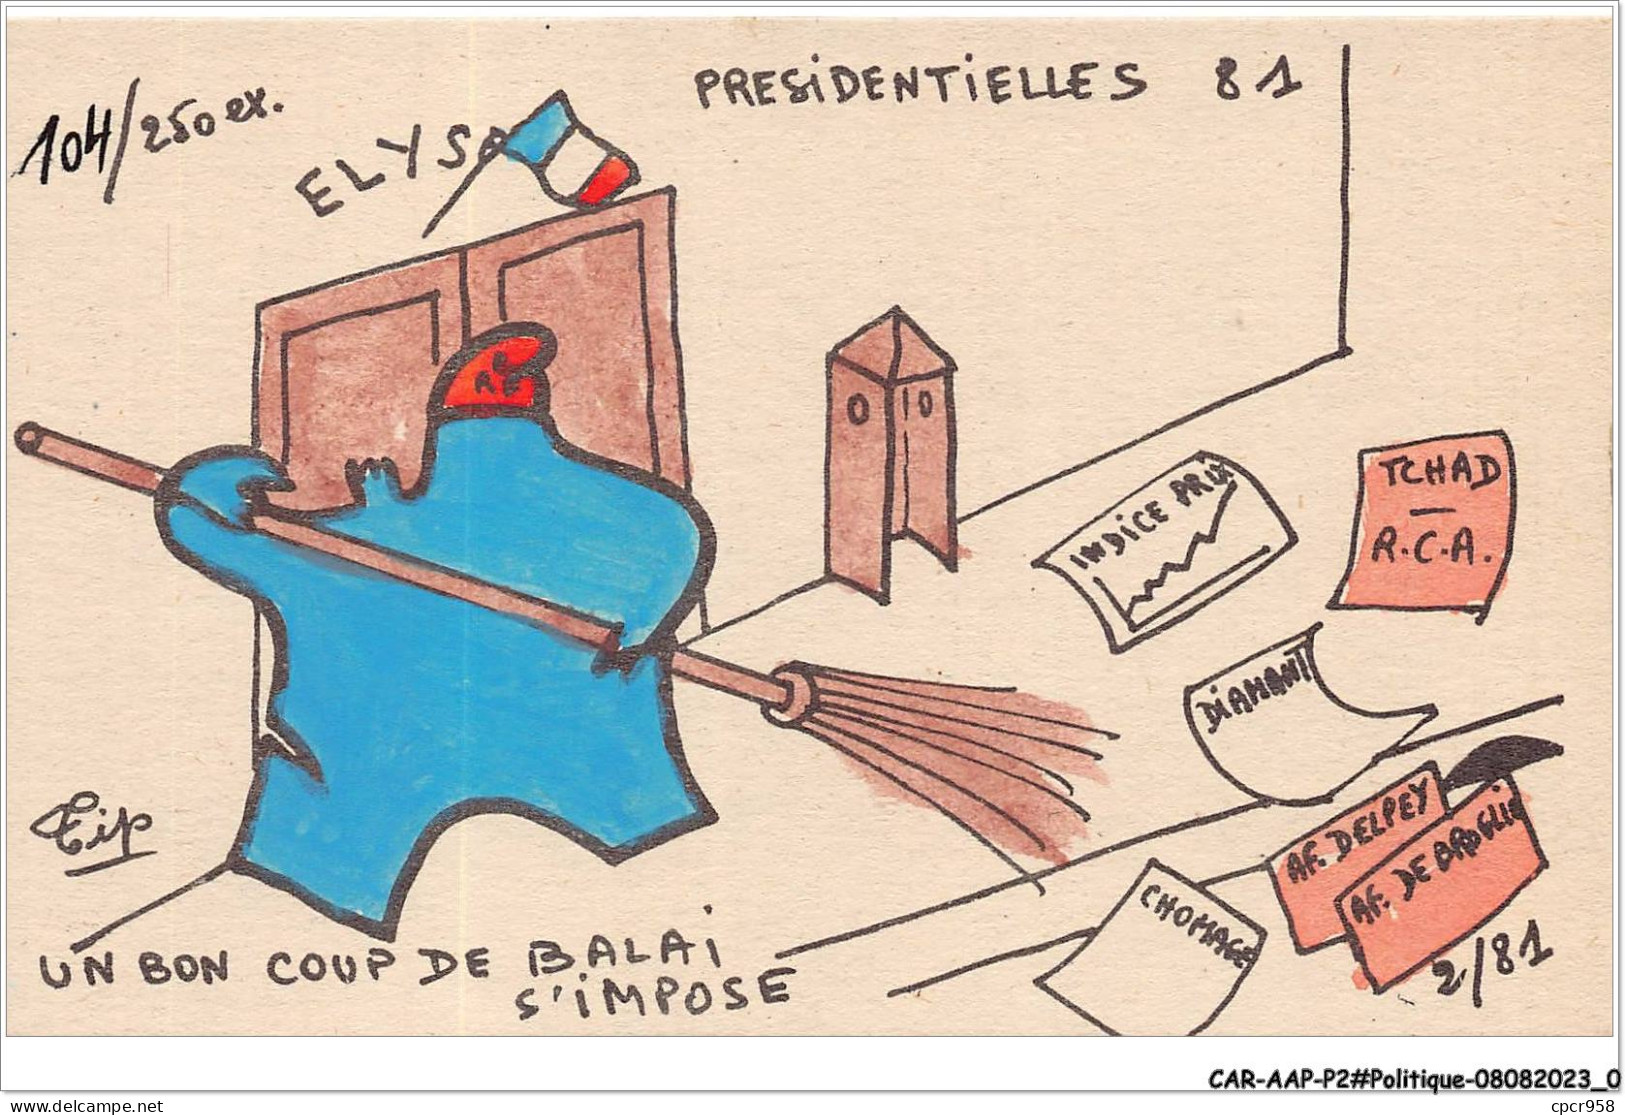 CAR-AAPP2-0083 - POLITIQUE - Presidentielles 81 - Un Bon Coup De Palais S'impose - Parteien & Wahlen